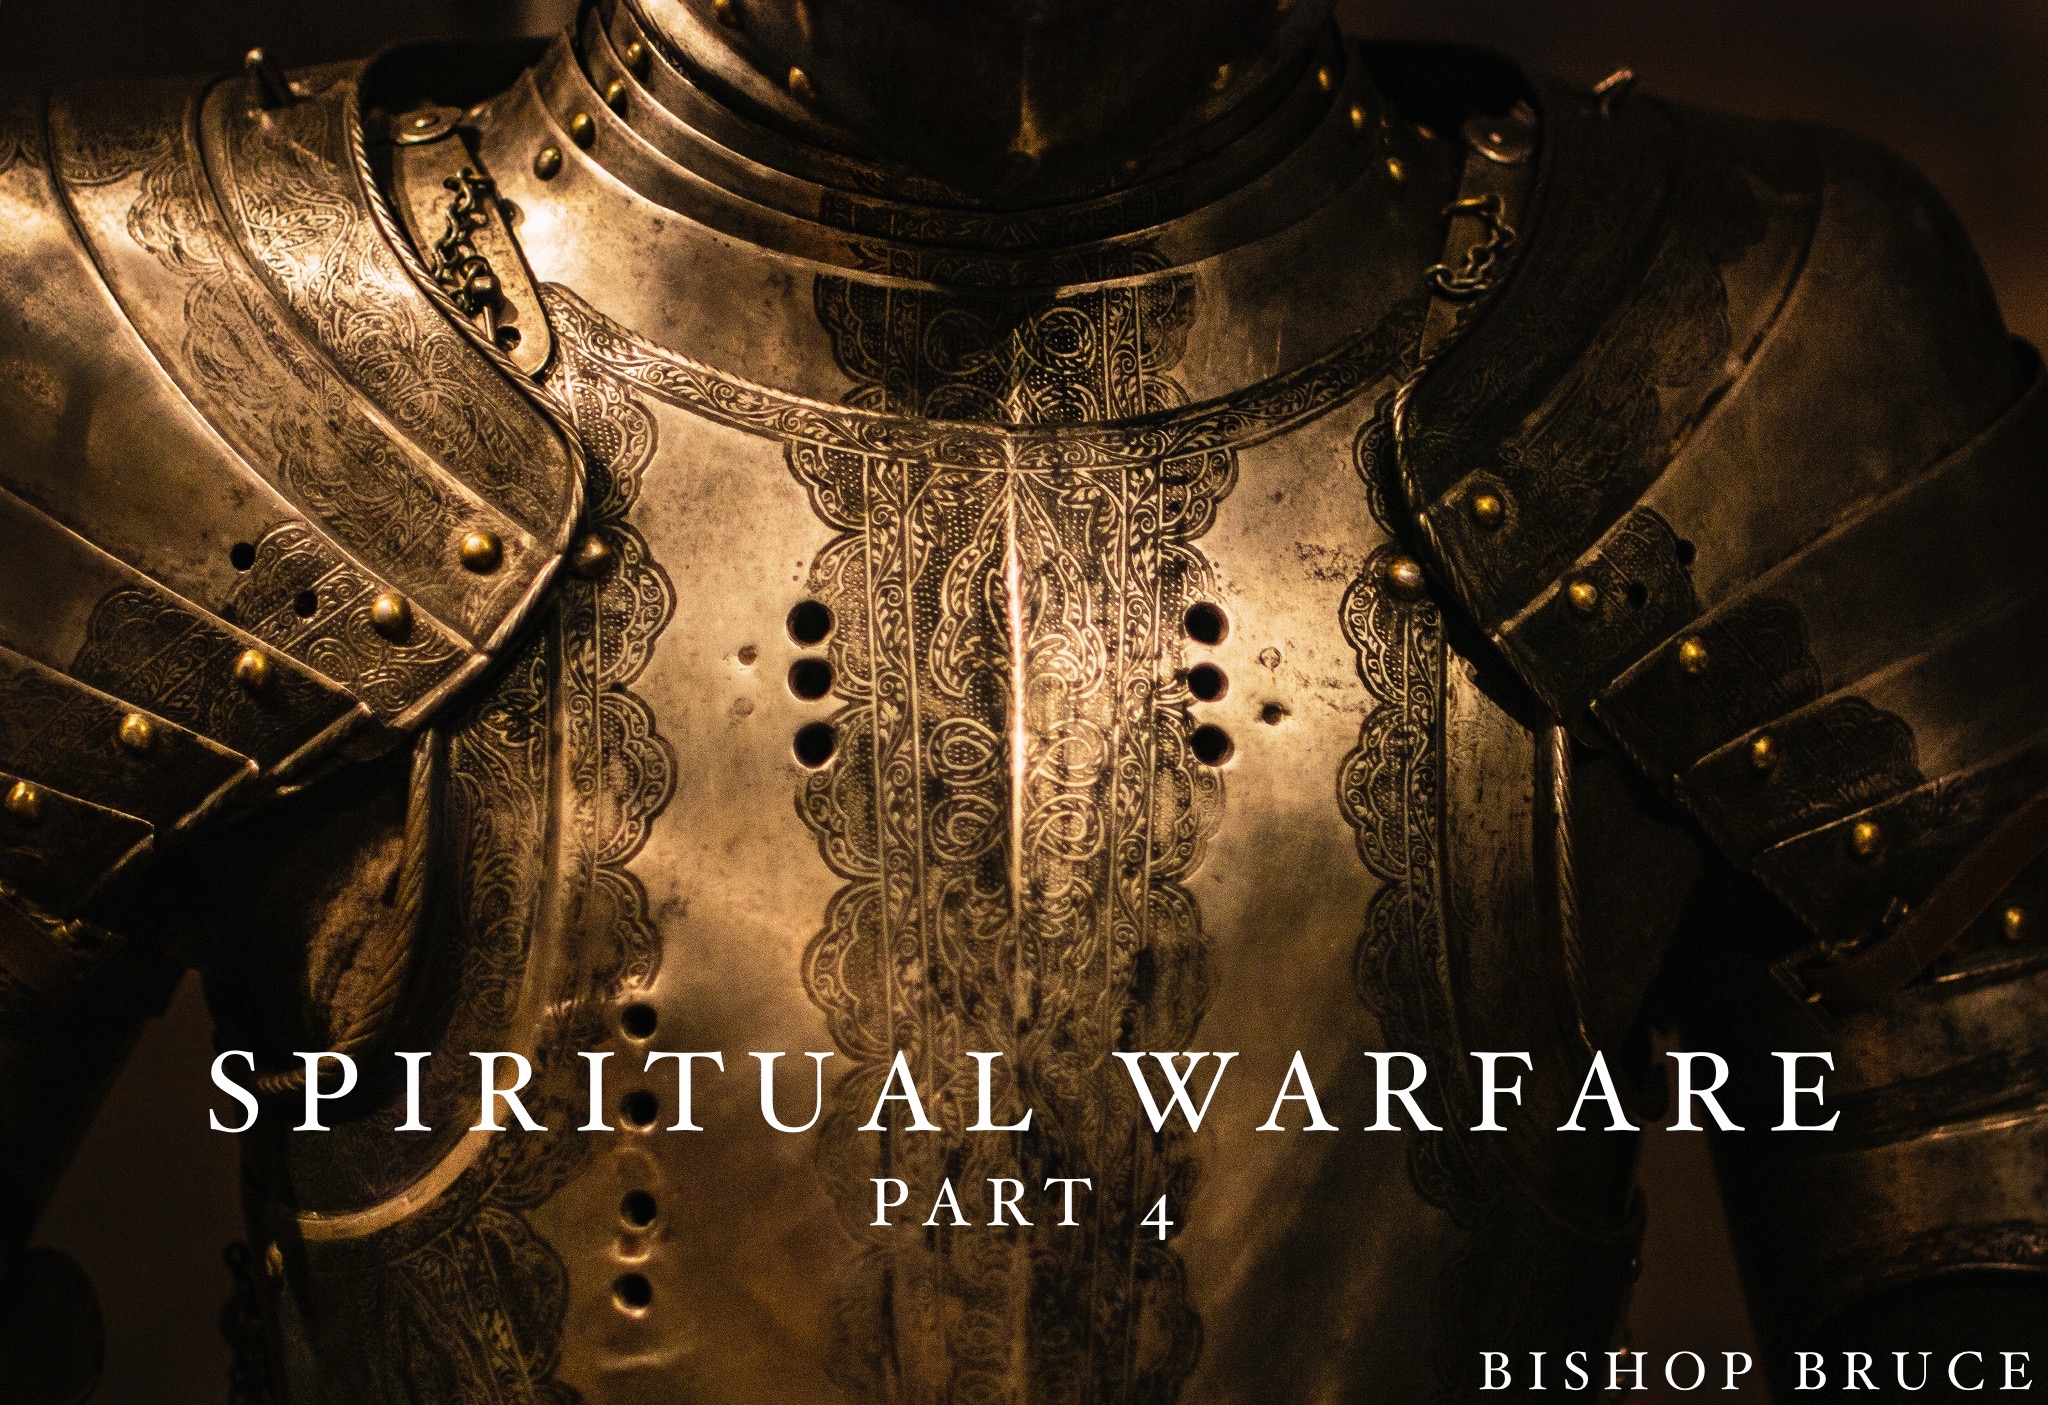 Spiritual Warfare Pt. 4